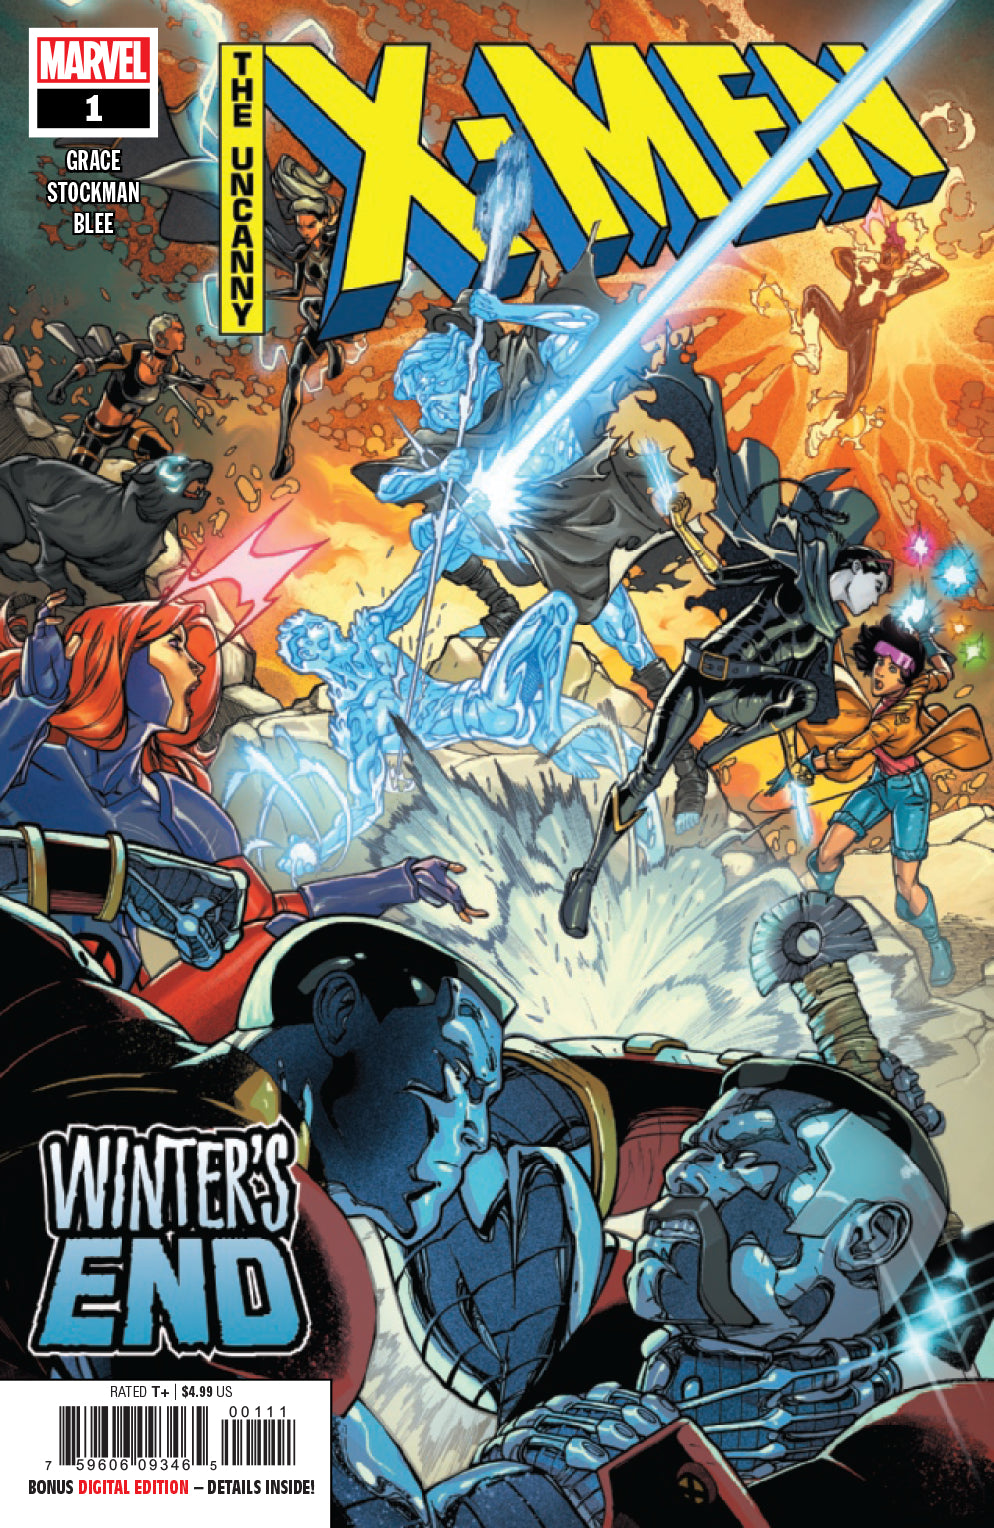 UNCANNY X-MEN WINTERS END #1 COVER